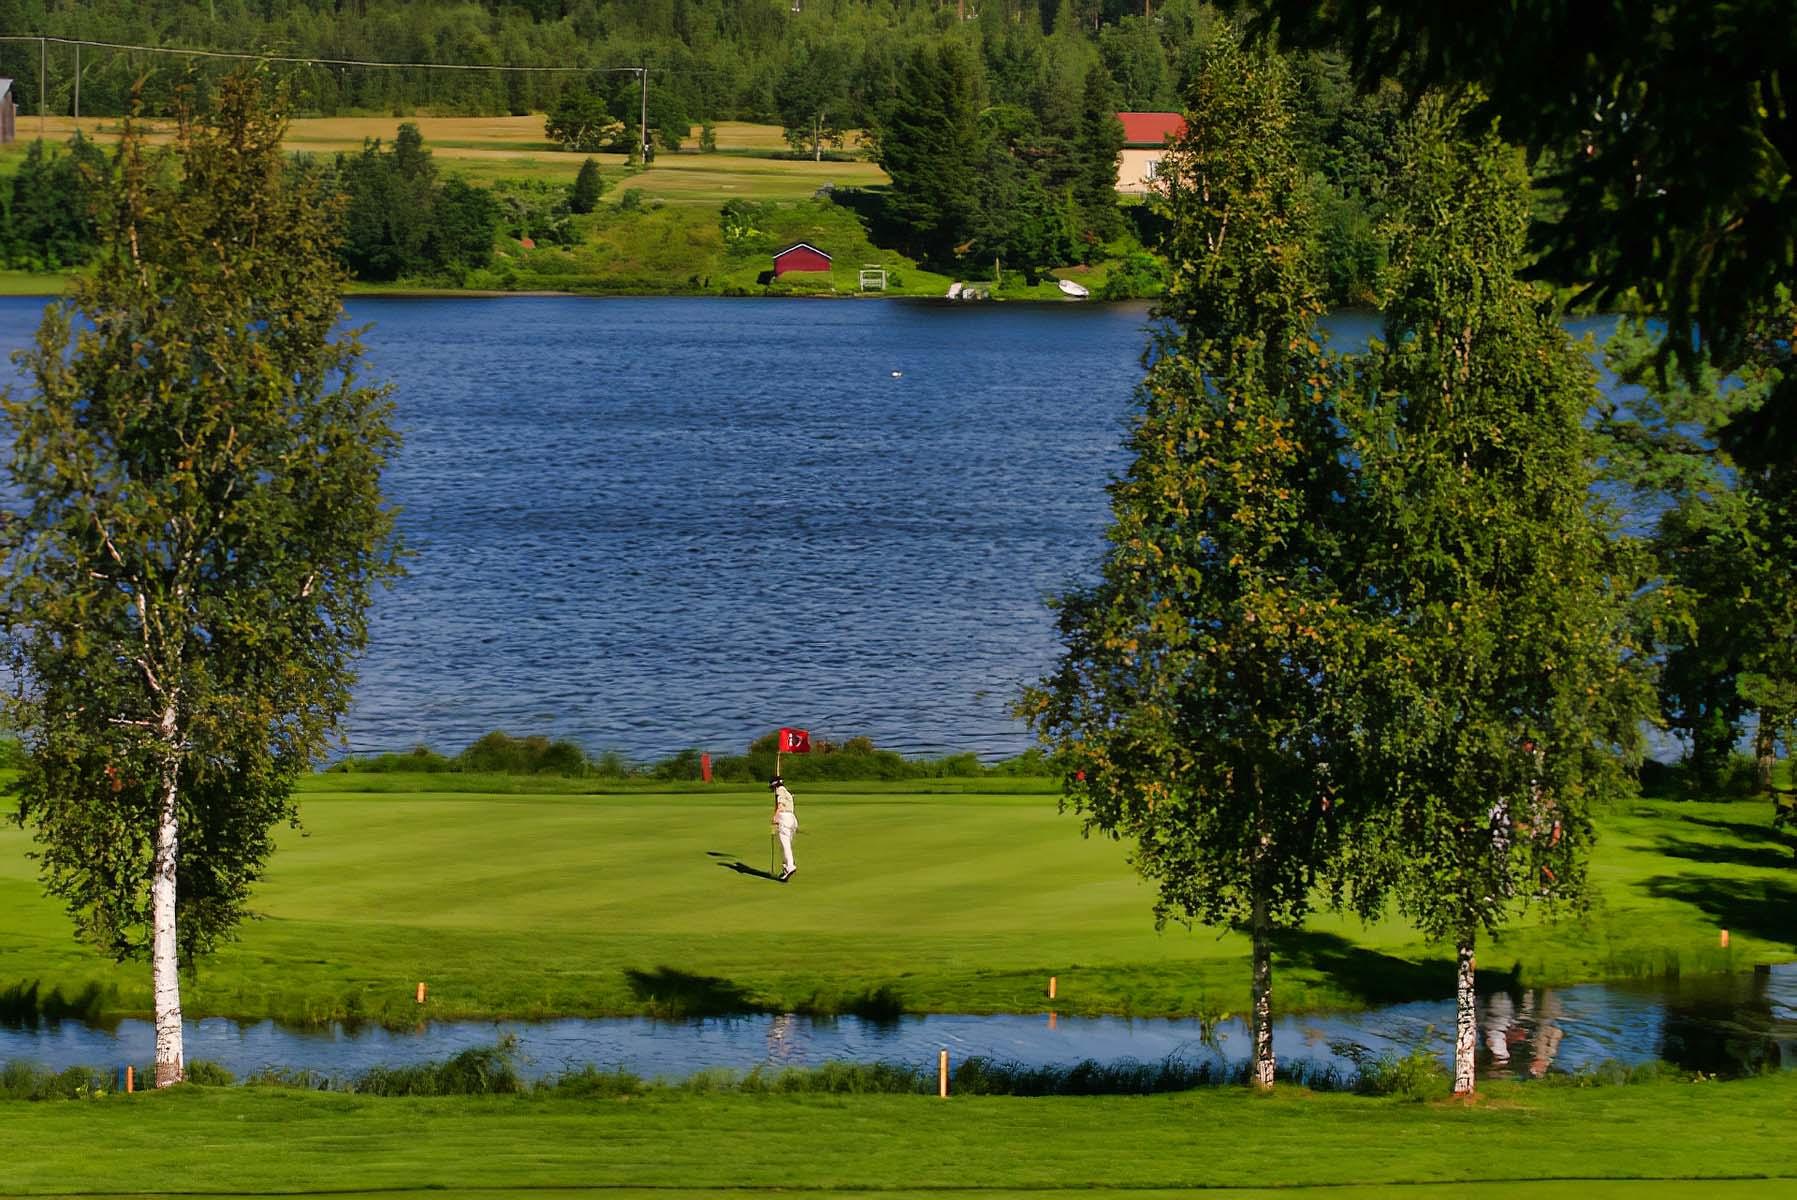 Järviseudun Golfseura 3. kuva – Golfpiste Kenttäopas – Suomi